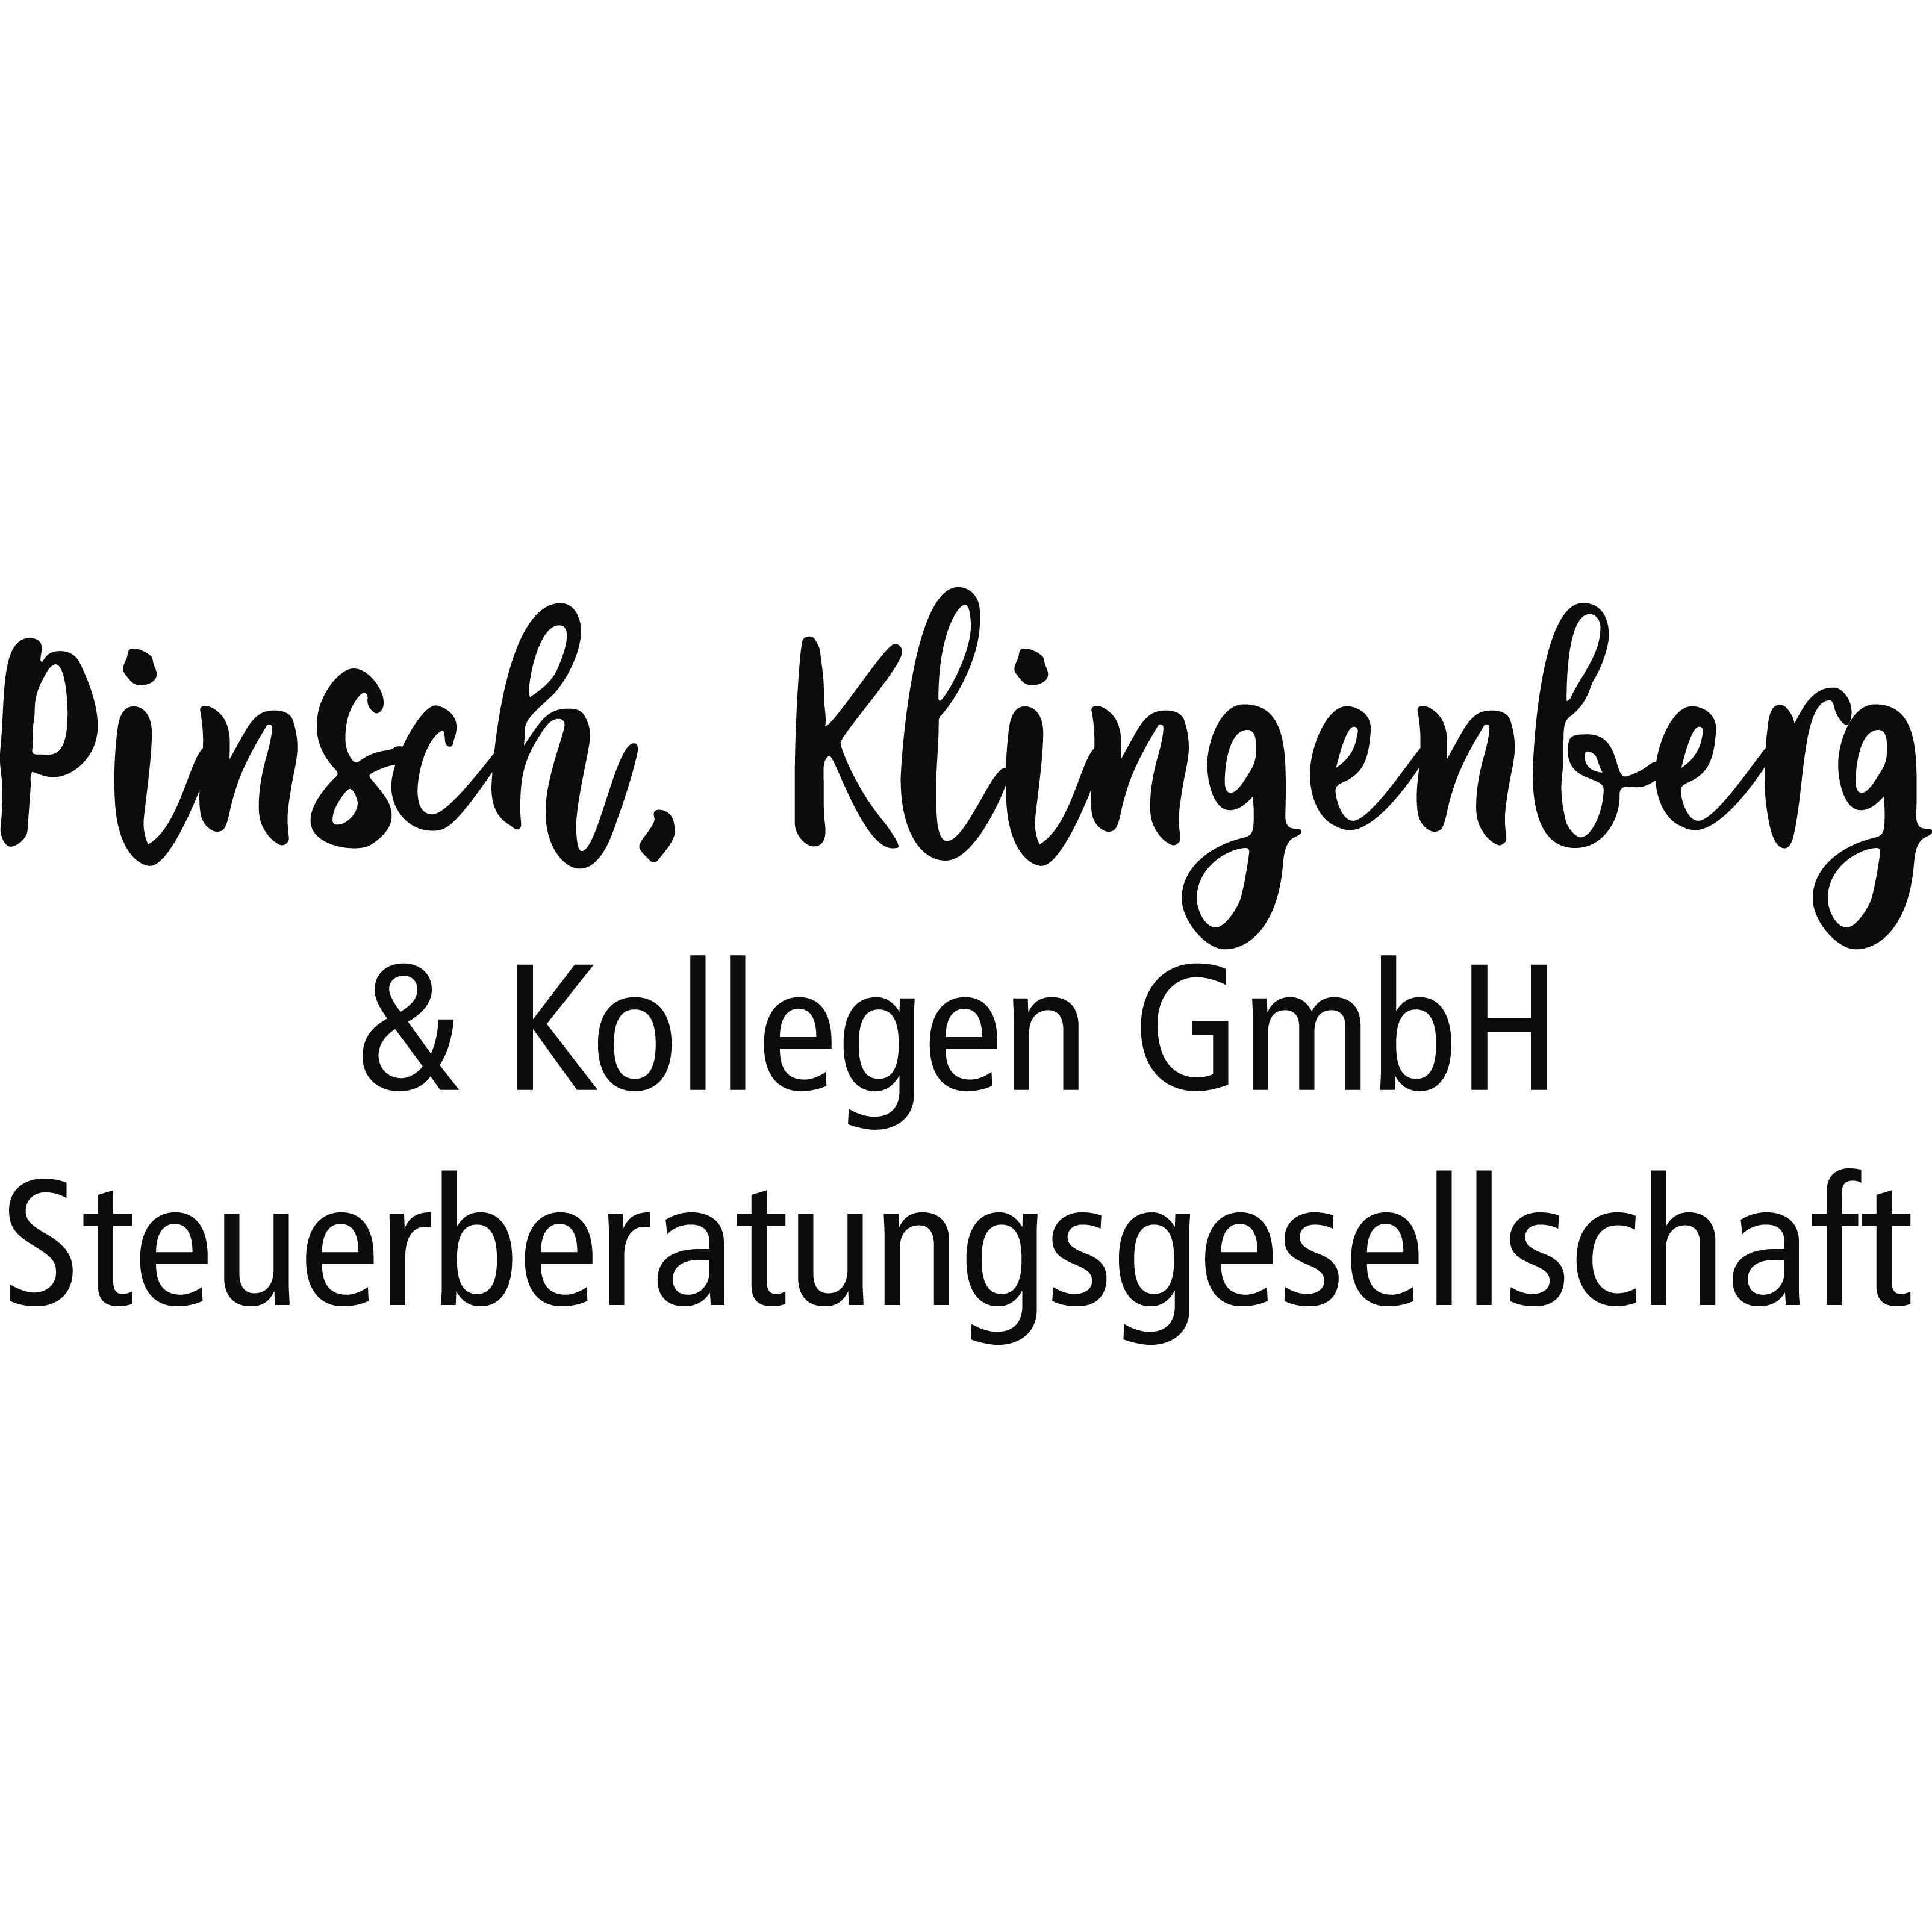 Bild zu Pinsch, Klingenberg & Kollegen GmbH Steuerberatungsgesellschaft in Braunschweig